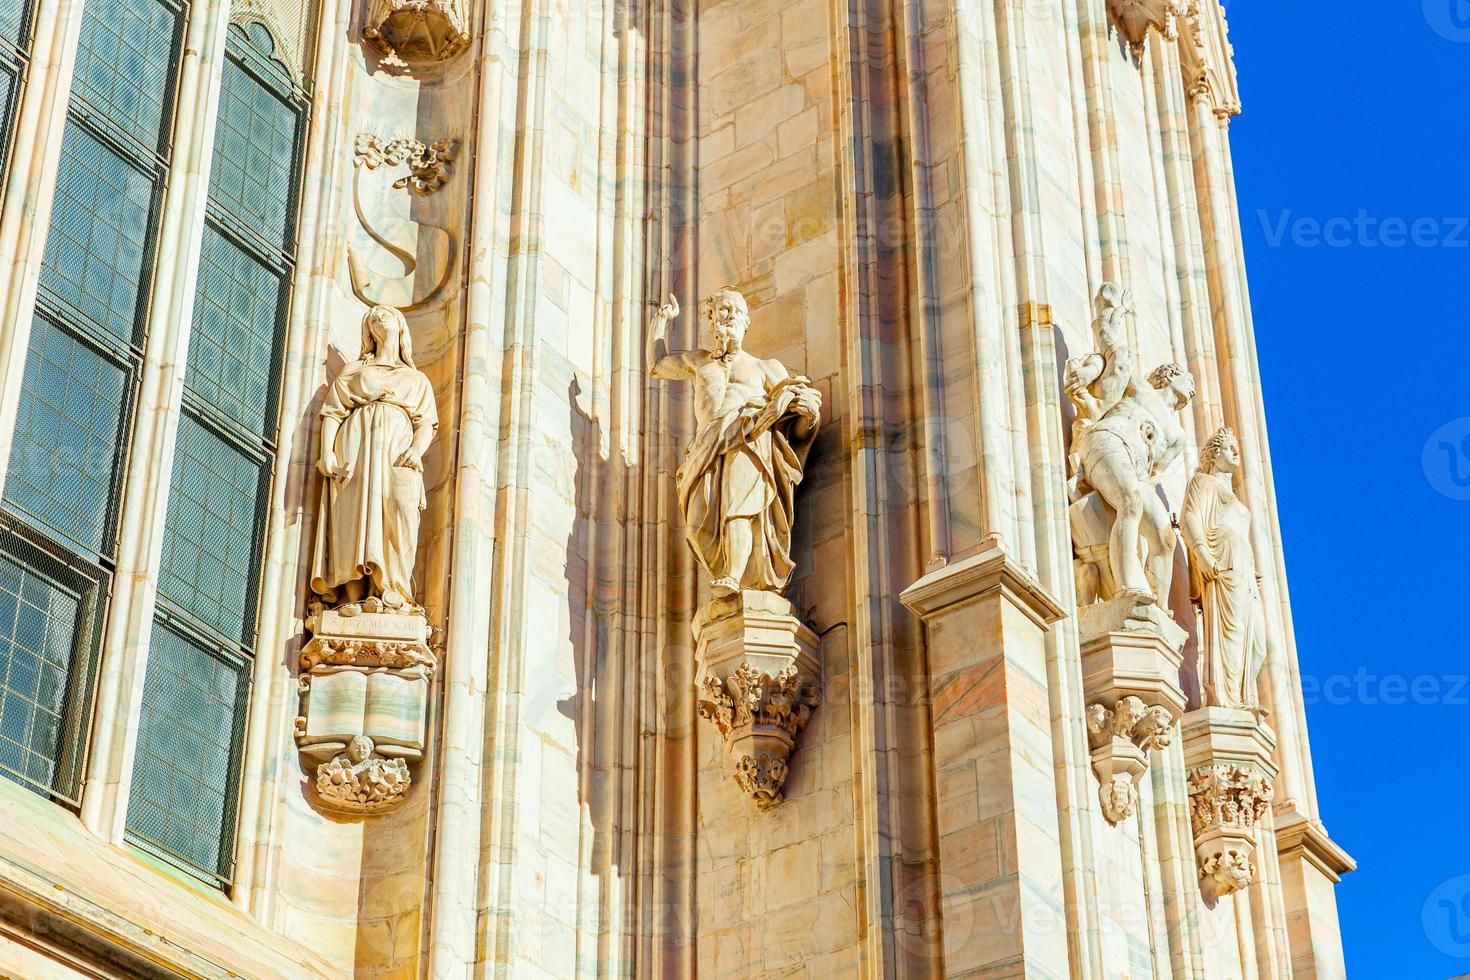 fasaden på katedralen i milano duomo di milano med gotiska spiror och statyer i vit marmor. topp turistattraktion på piazza i Milano, Lombardiet, Italien. vidvinkelvy av gammal gotisk arkitektur och konst. foto